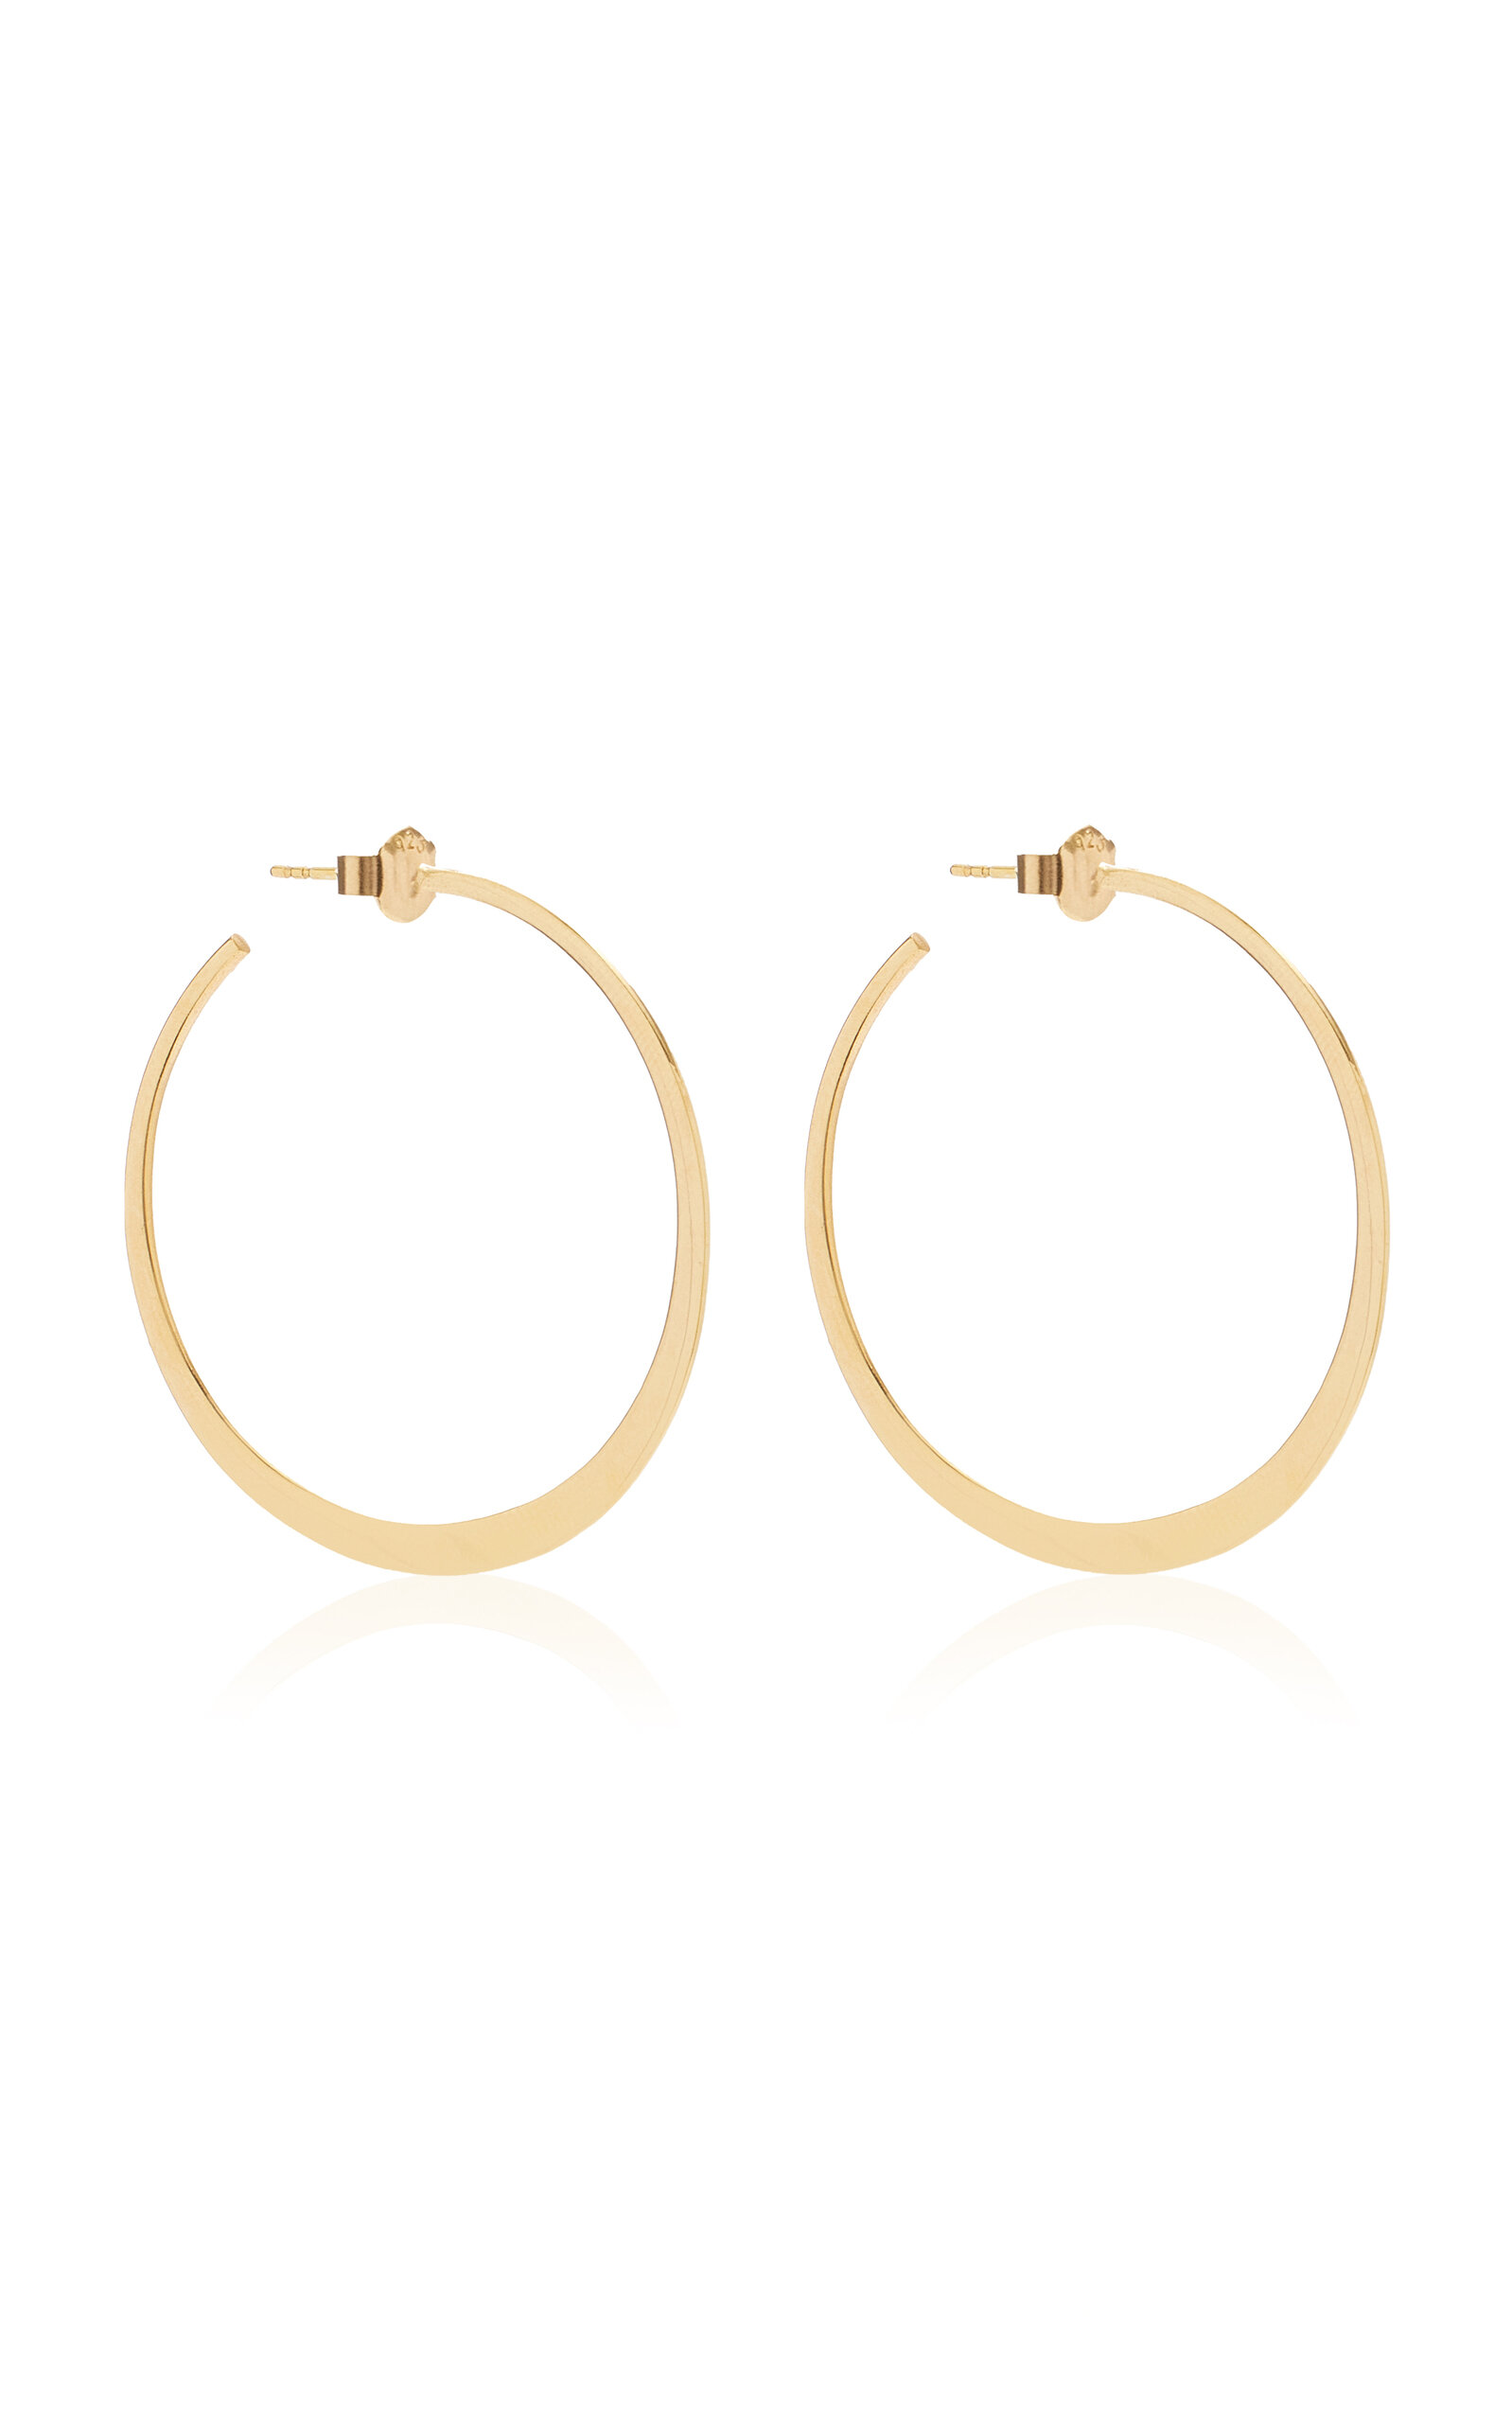 Maison Irem Women's Jolo 18K Gold-Plated Hoop Earrings